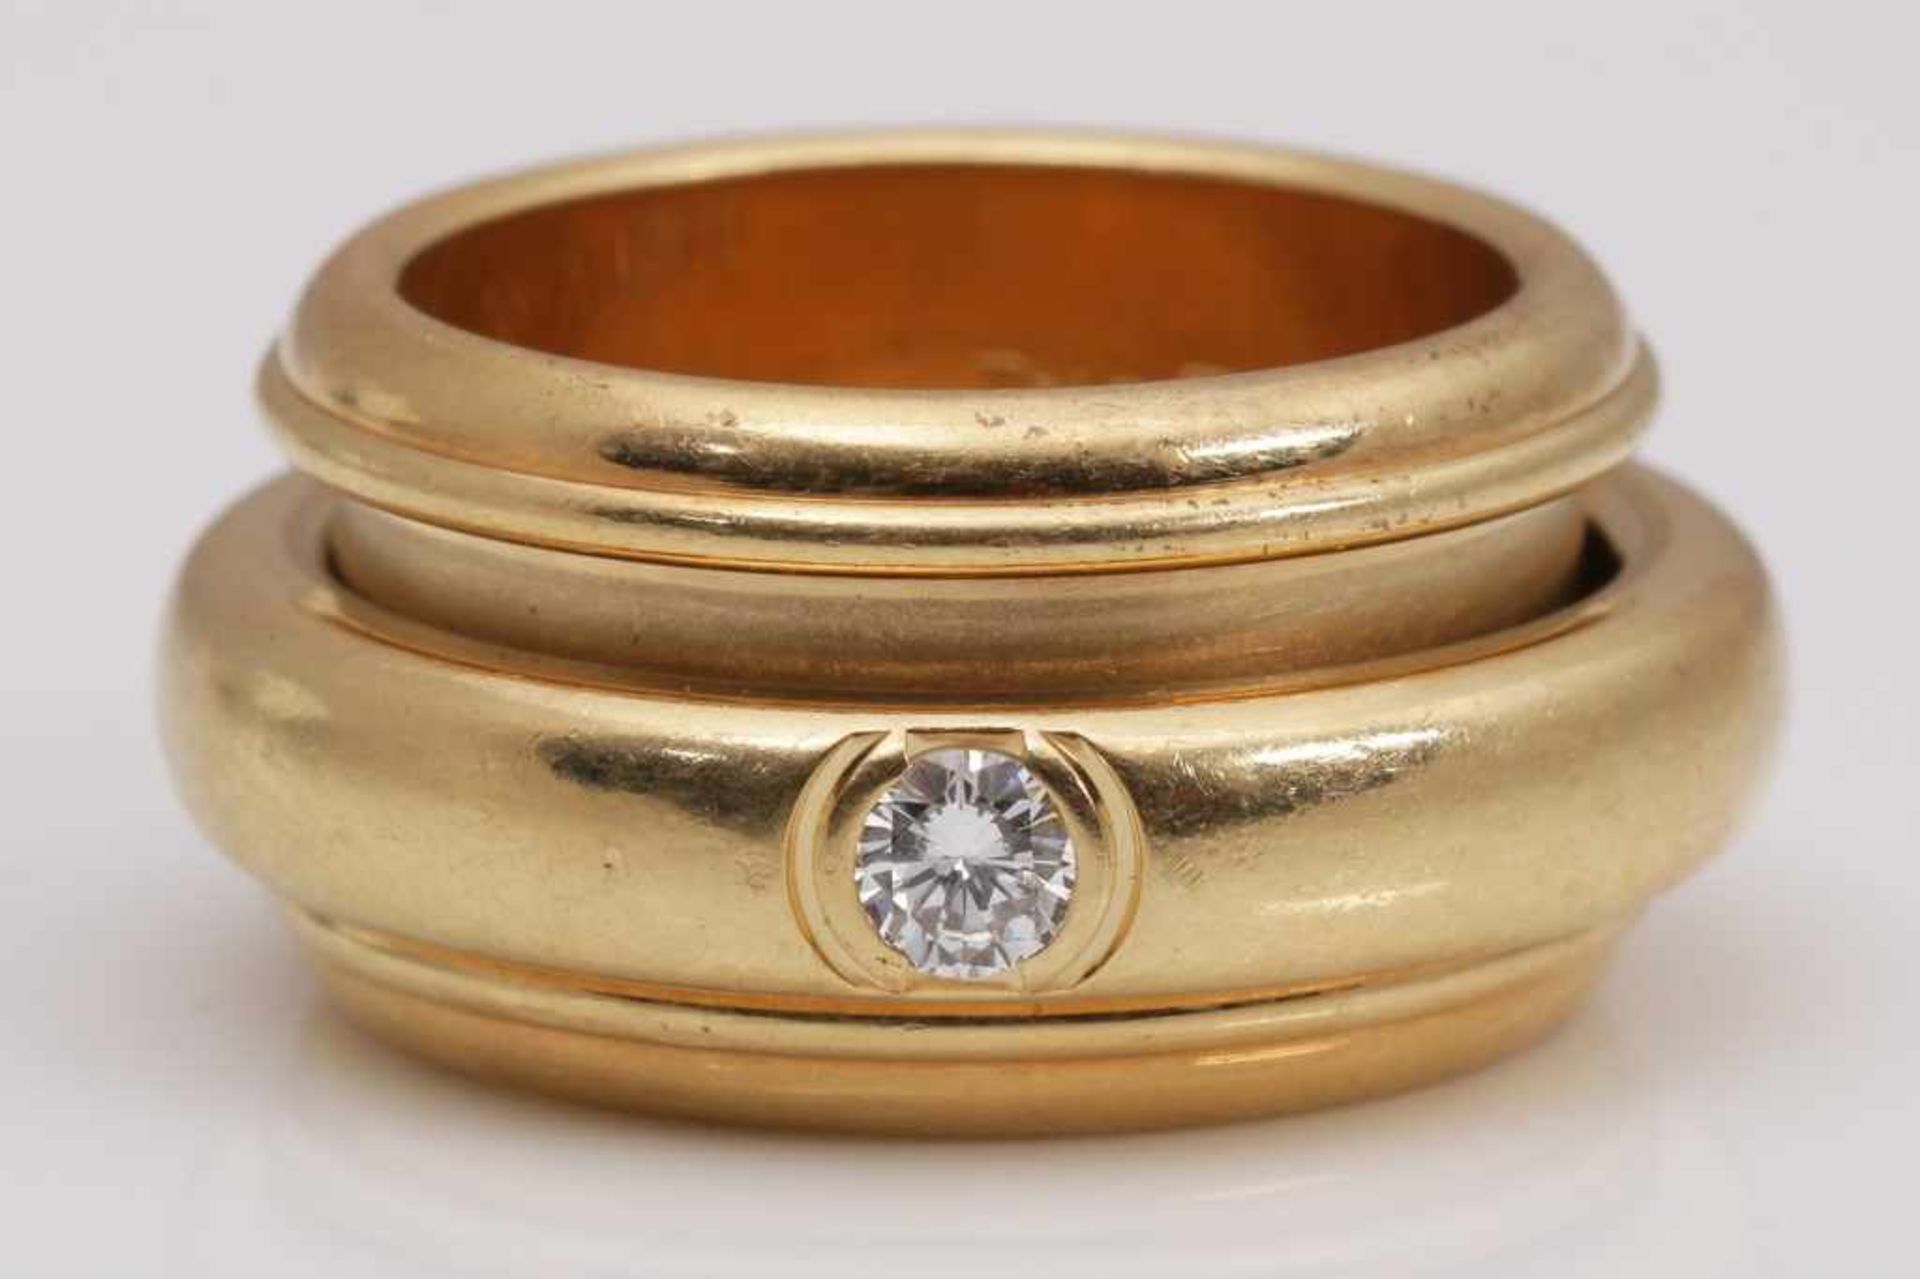 PIAGET Possession Ring mit Brillant 750er Gelbgold, sogenannter Spielring mit 1 Brillanten, ca. 0,